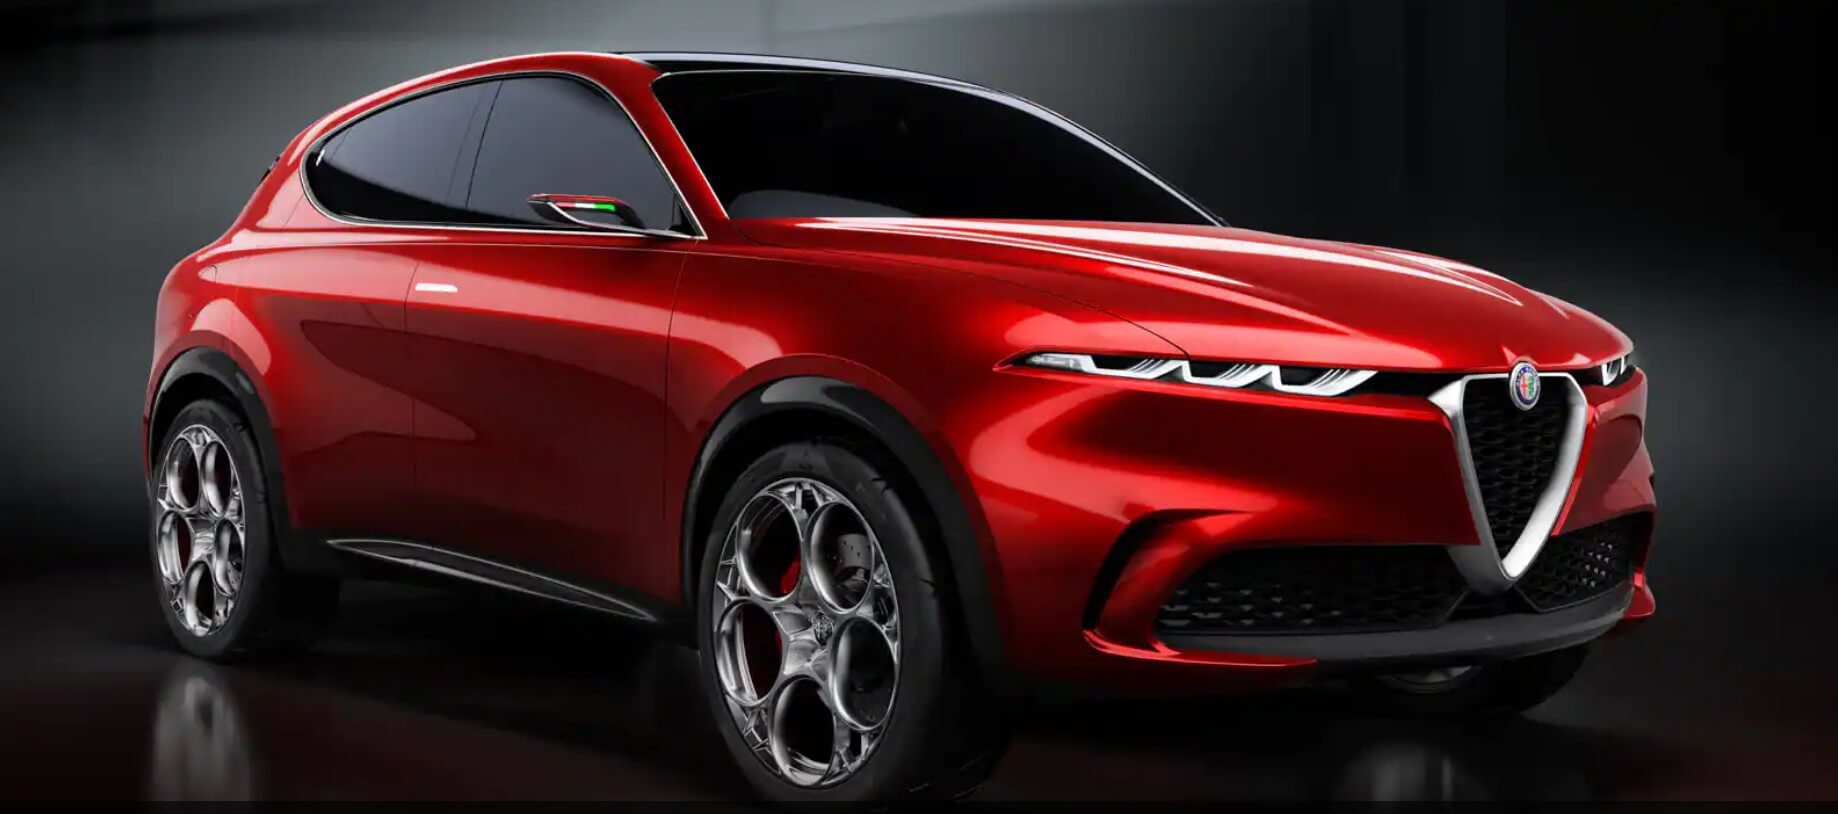 Alfa Romeo prévoit de construire un SUV électrique pour rivaliser avec BMW iX et Mercedes EQS